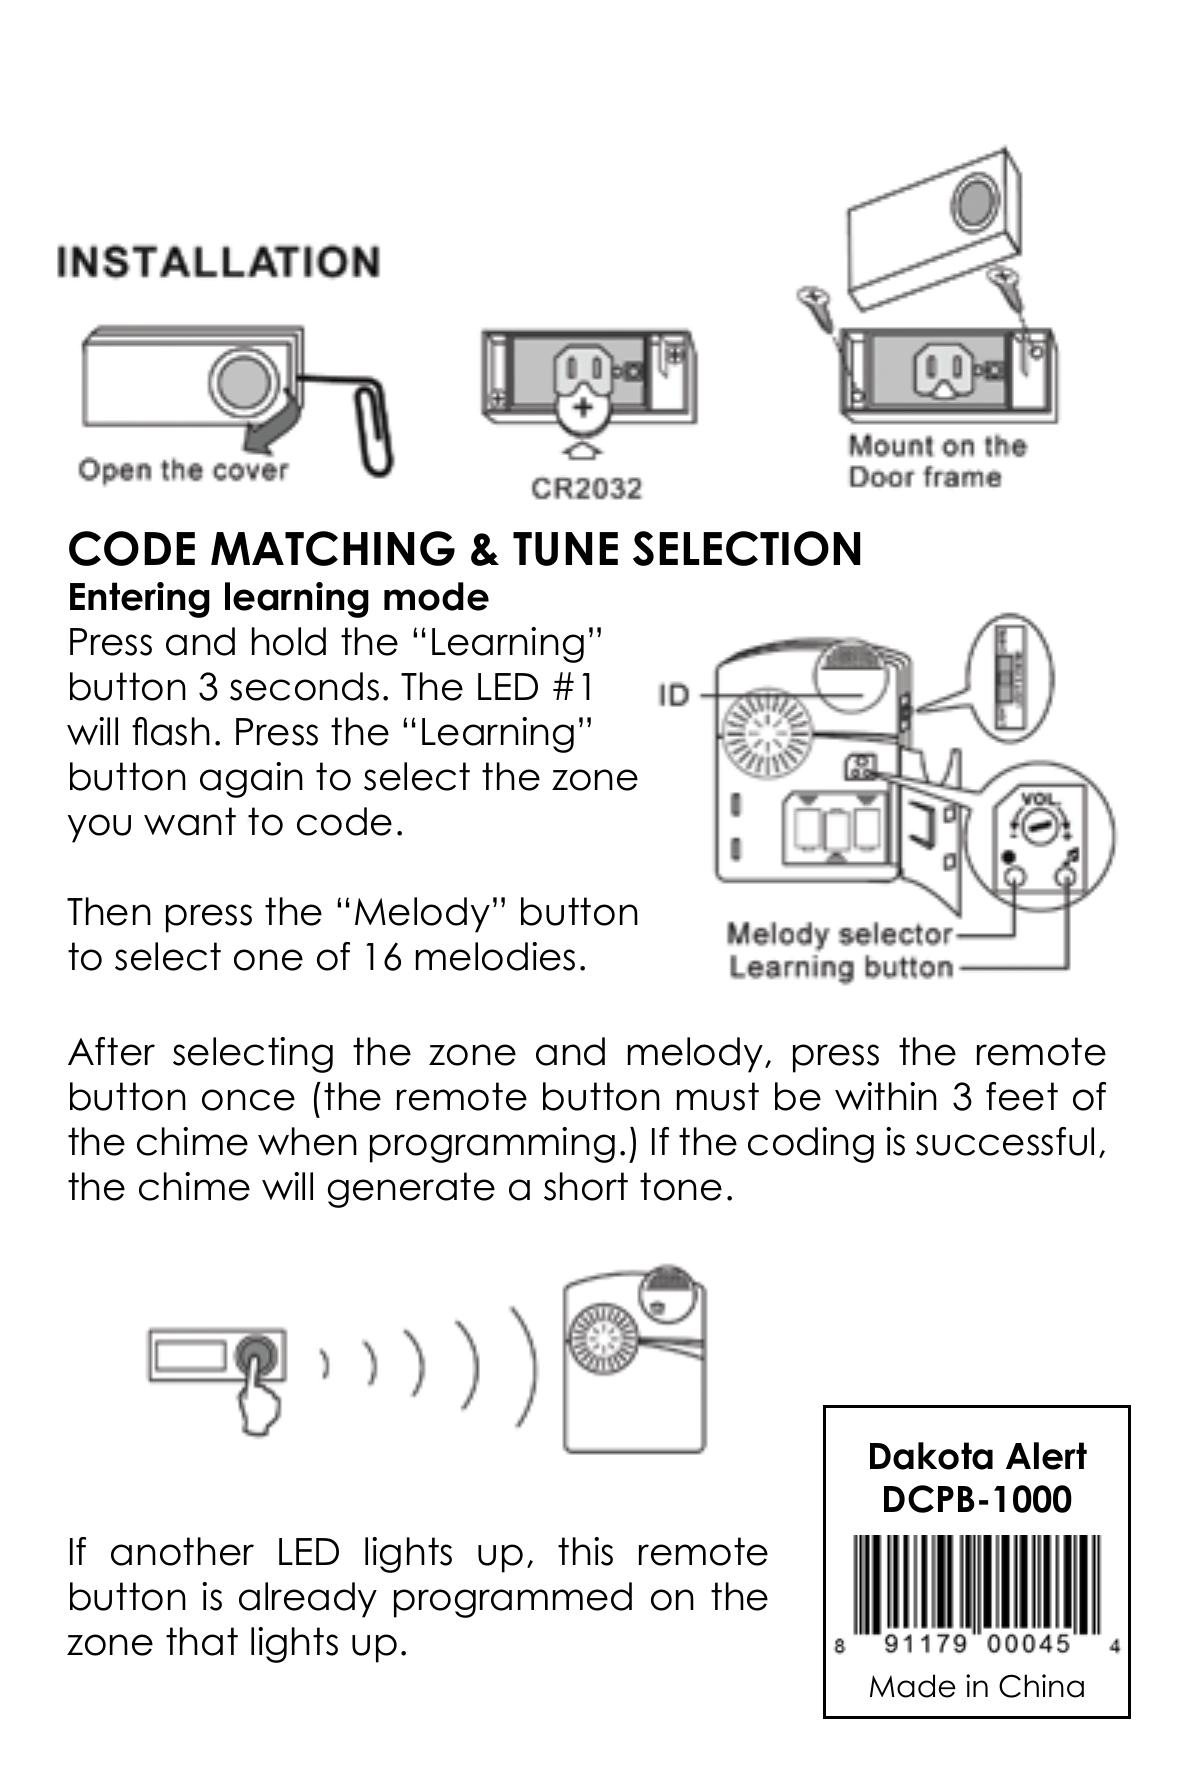 Dakota Alert DCPB-1000 Medical Alarms User Manual